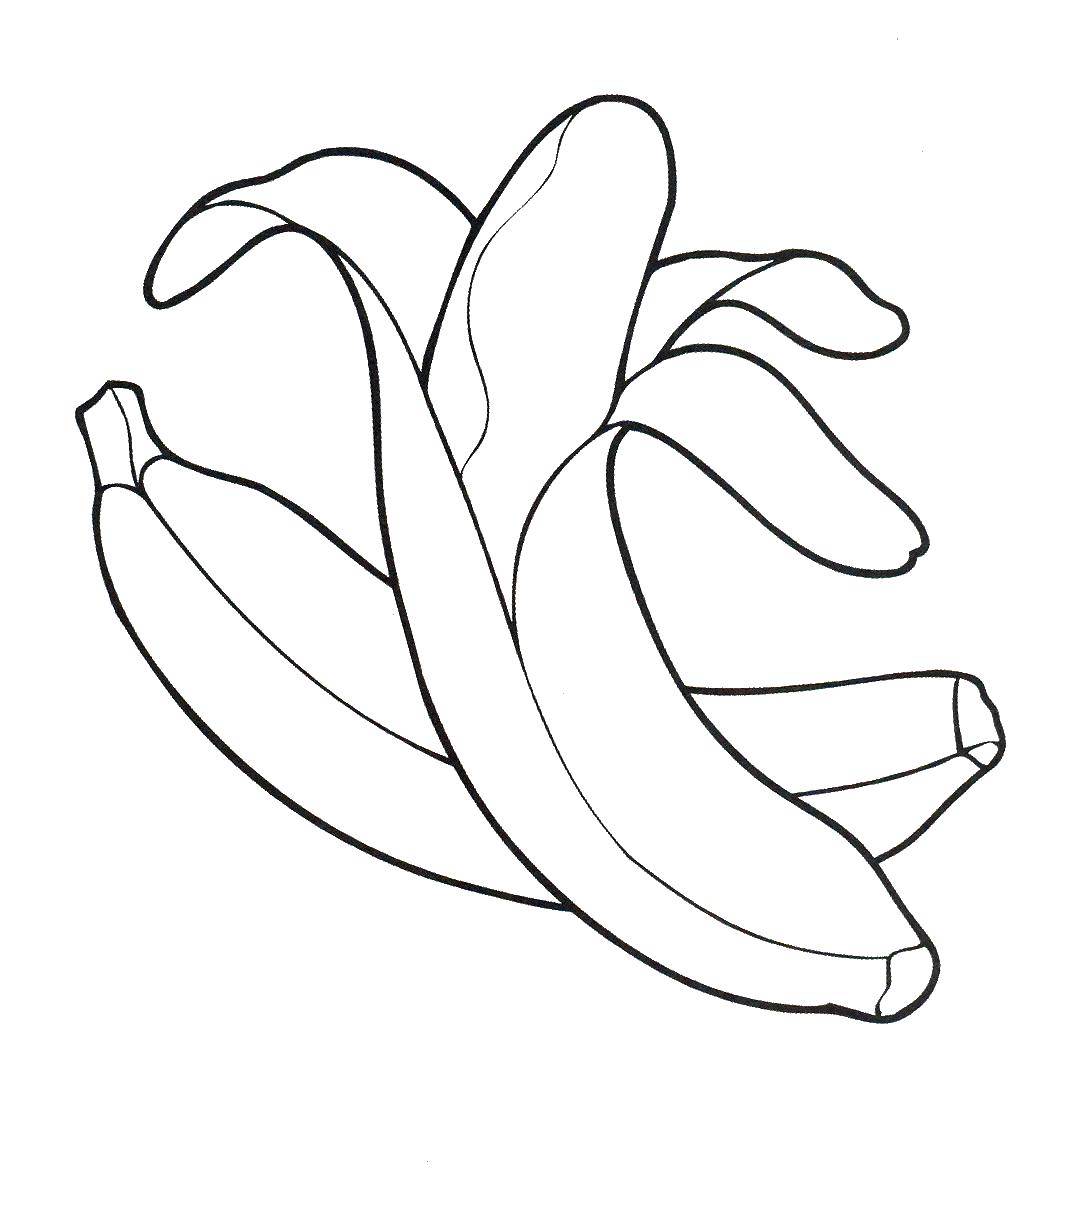 Coloring Banana. Category fruits. Tags:  banana.